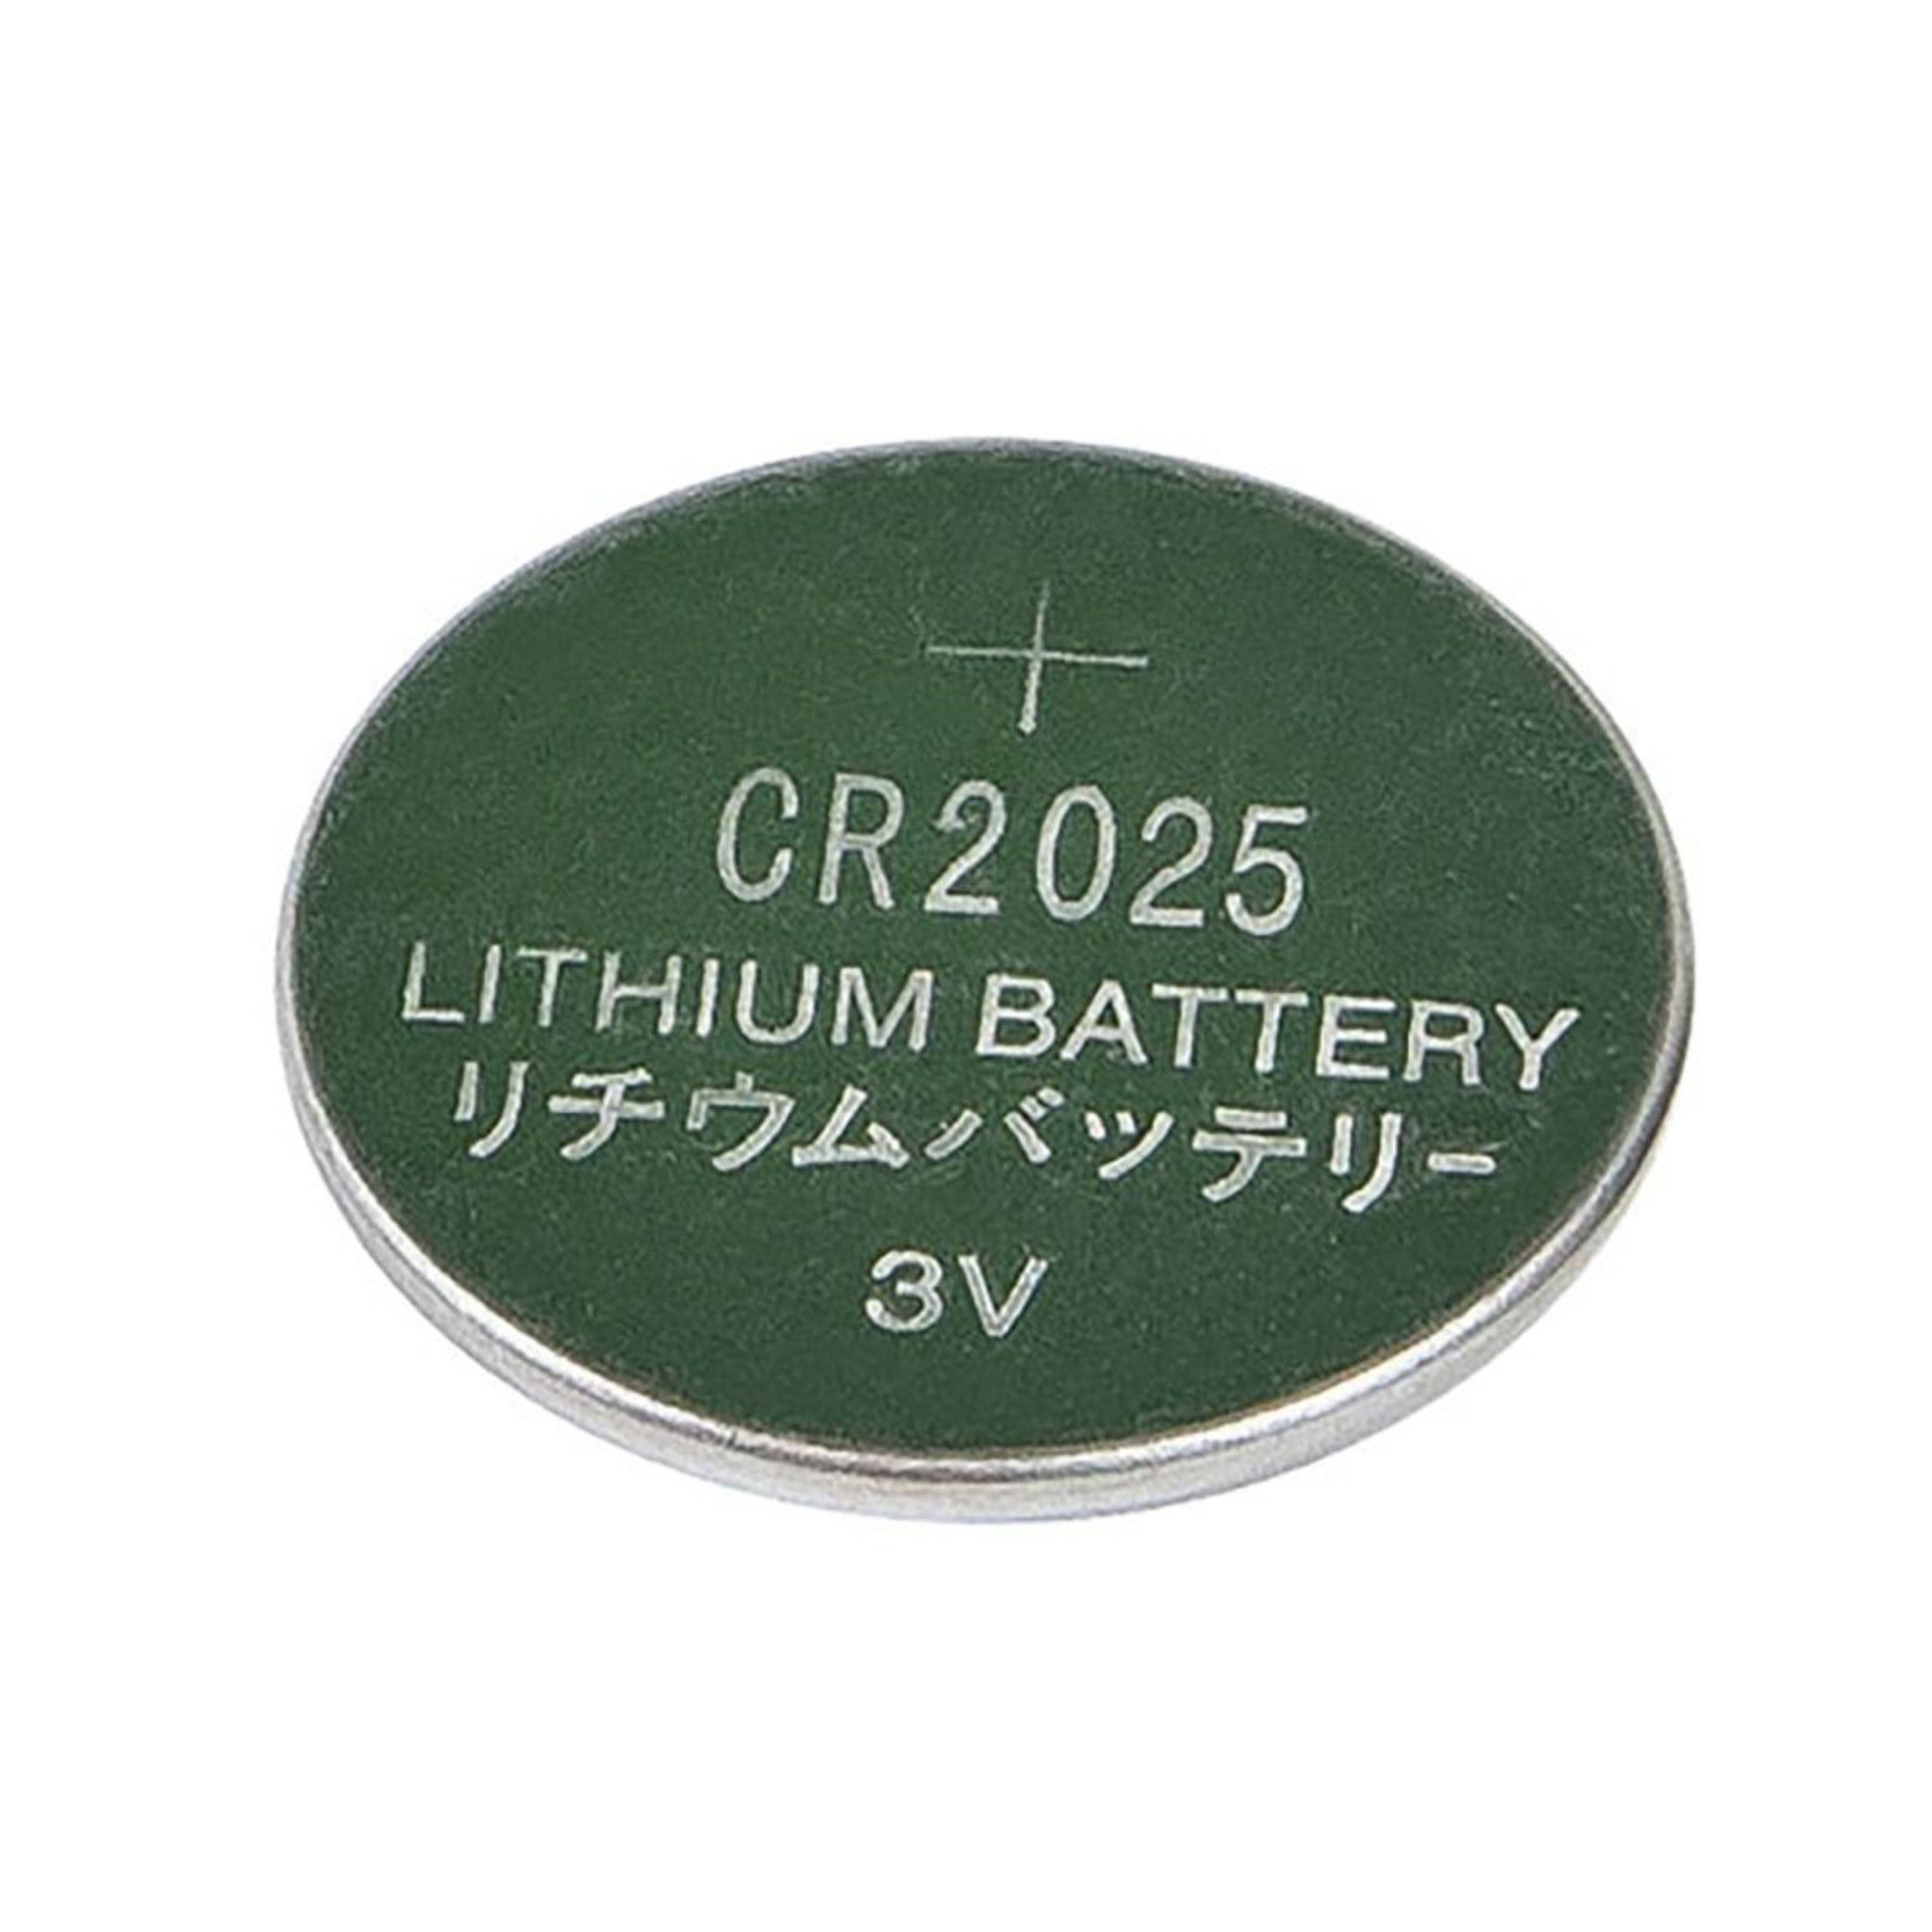 Bateria CR2025 P/ Controle Remoto e Placa Mãe C/ 2 Unidades